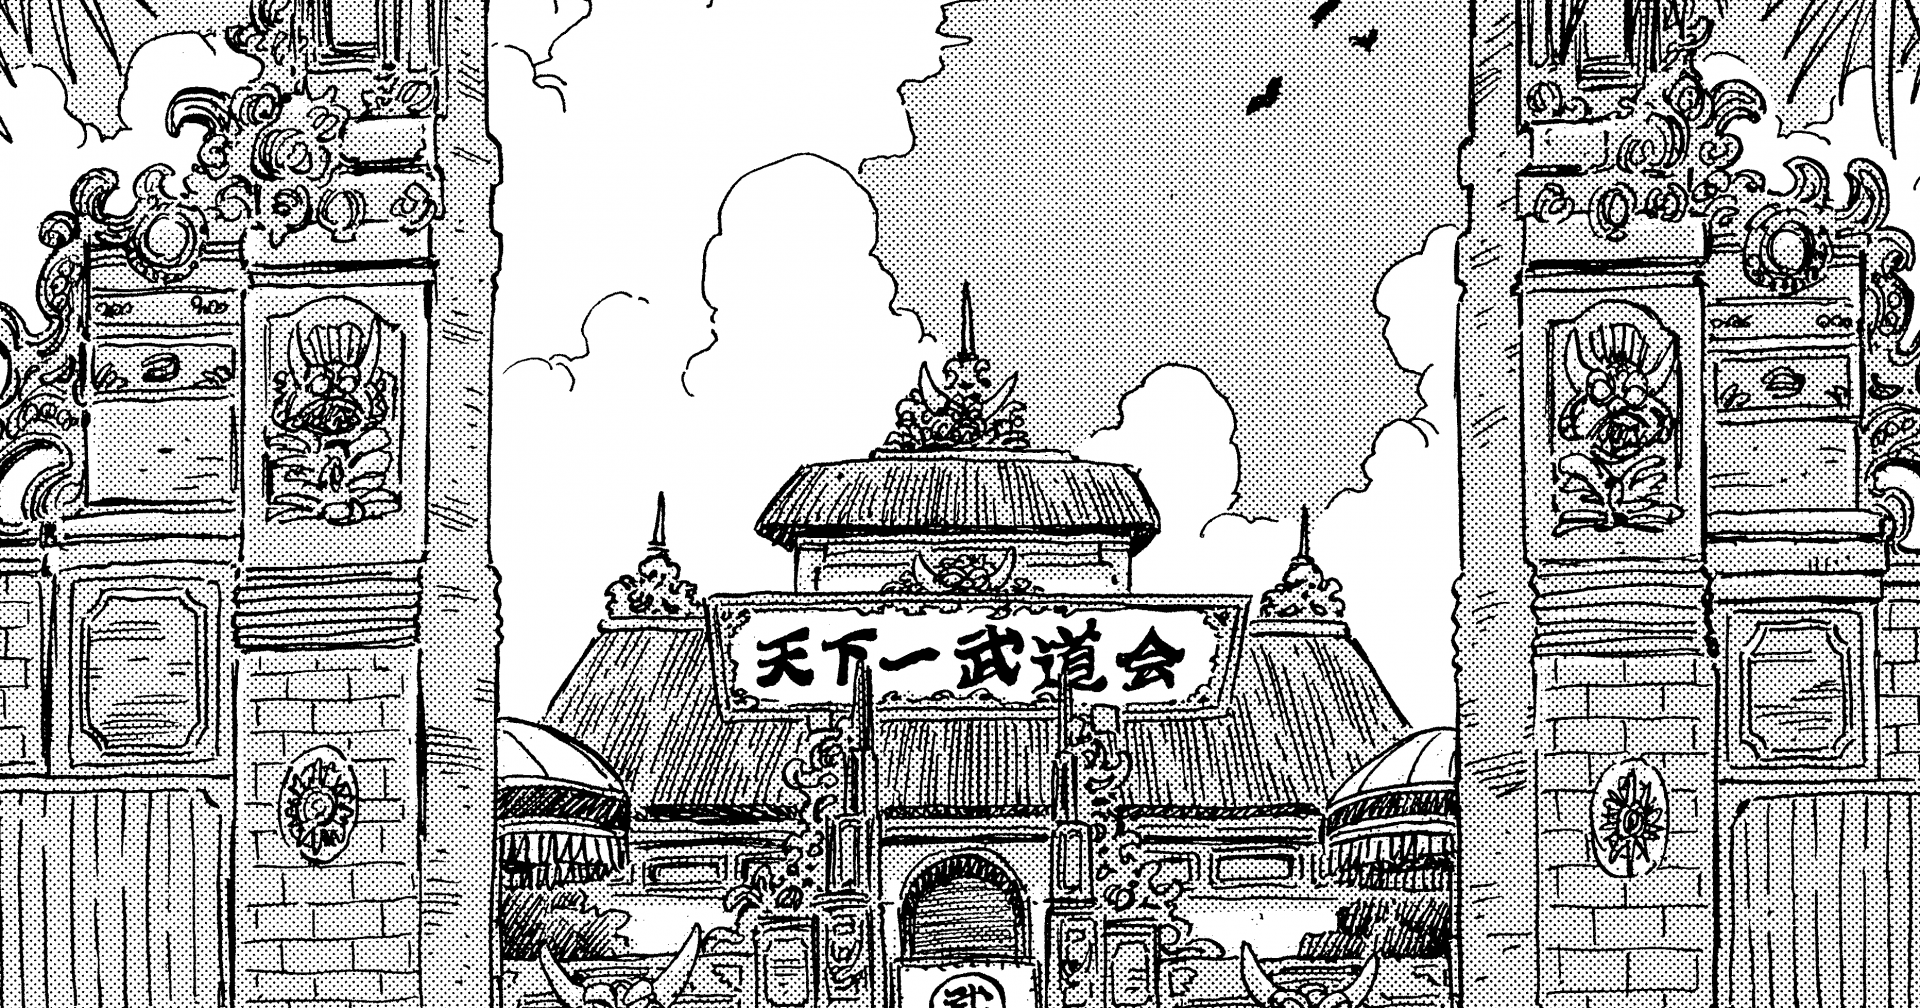 〜 Investigación en profundidad sobre el manga de Dragon Ball: Archivo n.º 019〜 Cuaderno de viaje por el mundo: El Tenkaichi Budokai Arena